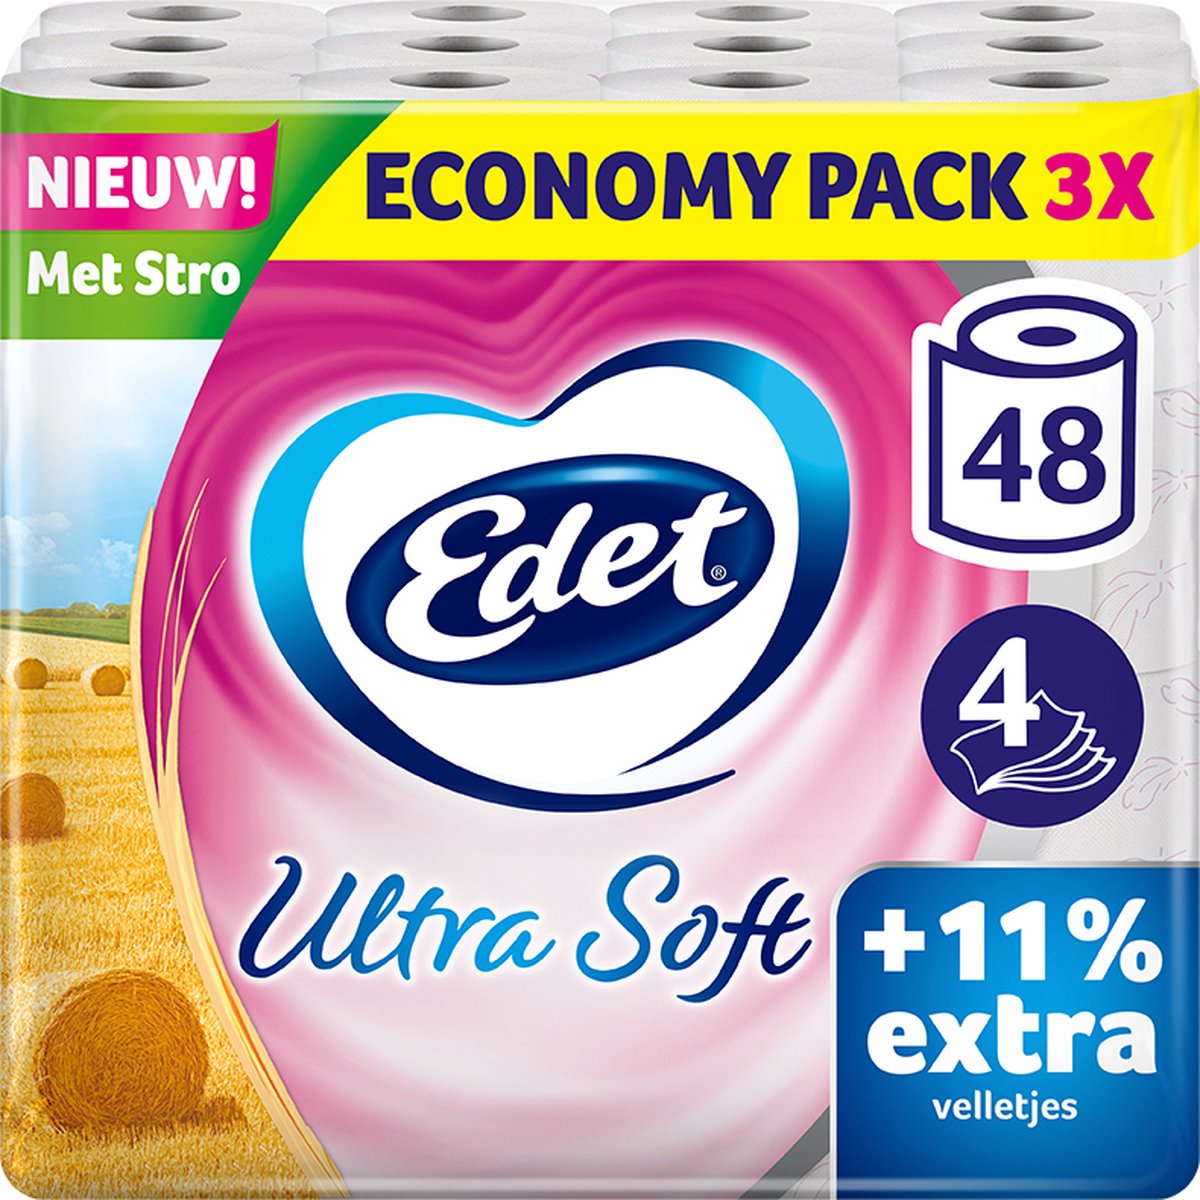 Edet Ultra Soft Toiletpapier met stro - 4-laags - 48 rollen - 11% extra velletjes - voordeelverpakking - Edet